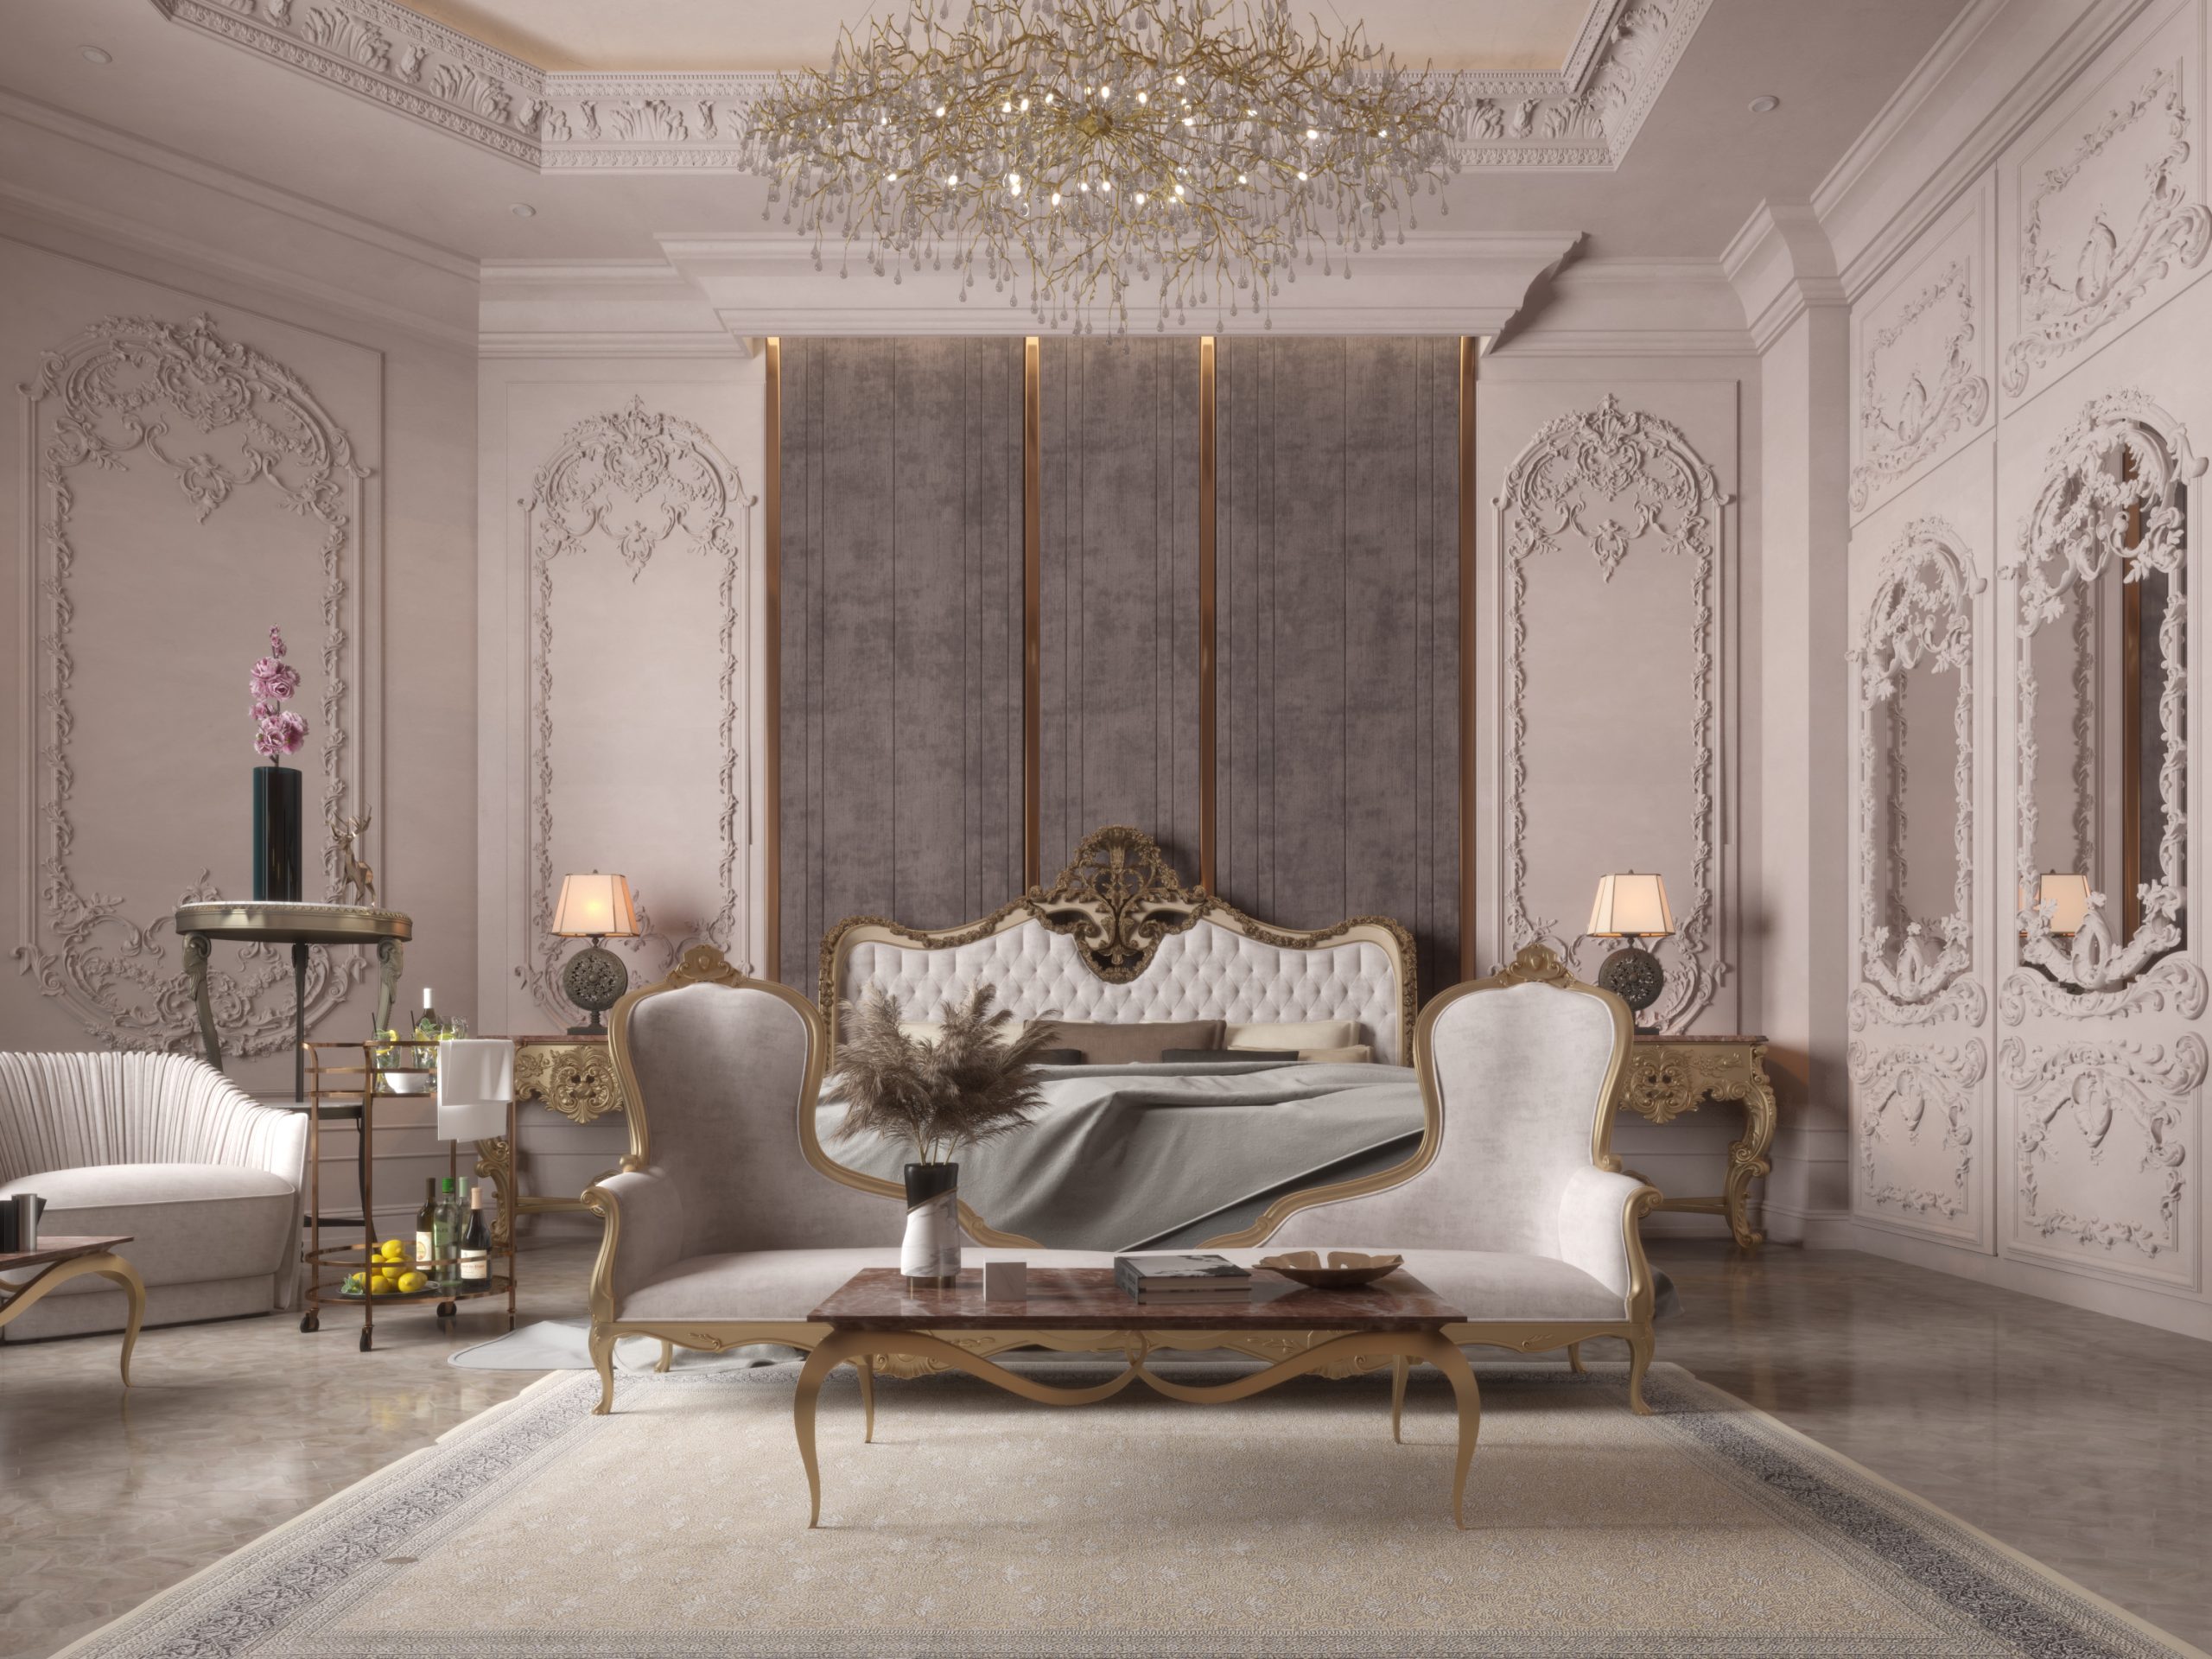 Classic Interior Design For Master Bedroom | HRarchZ Architecture Studio